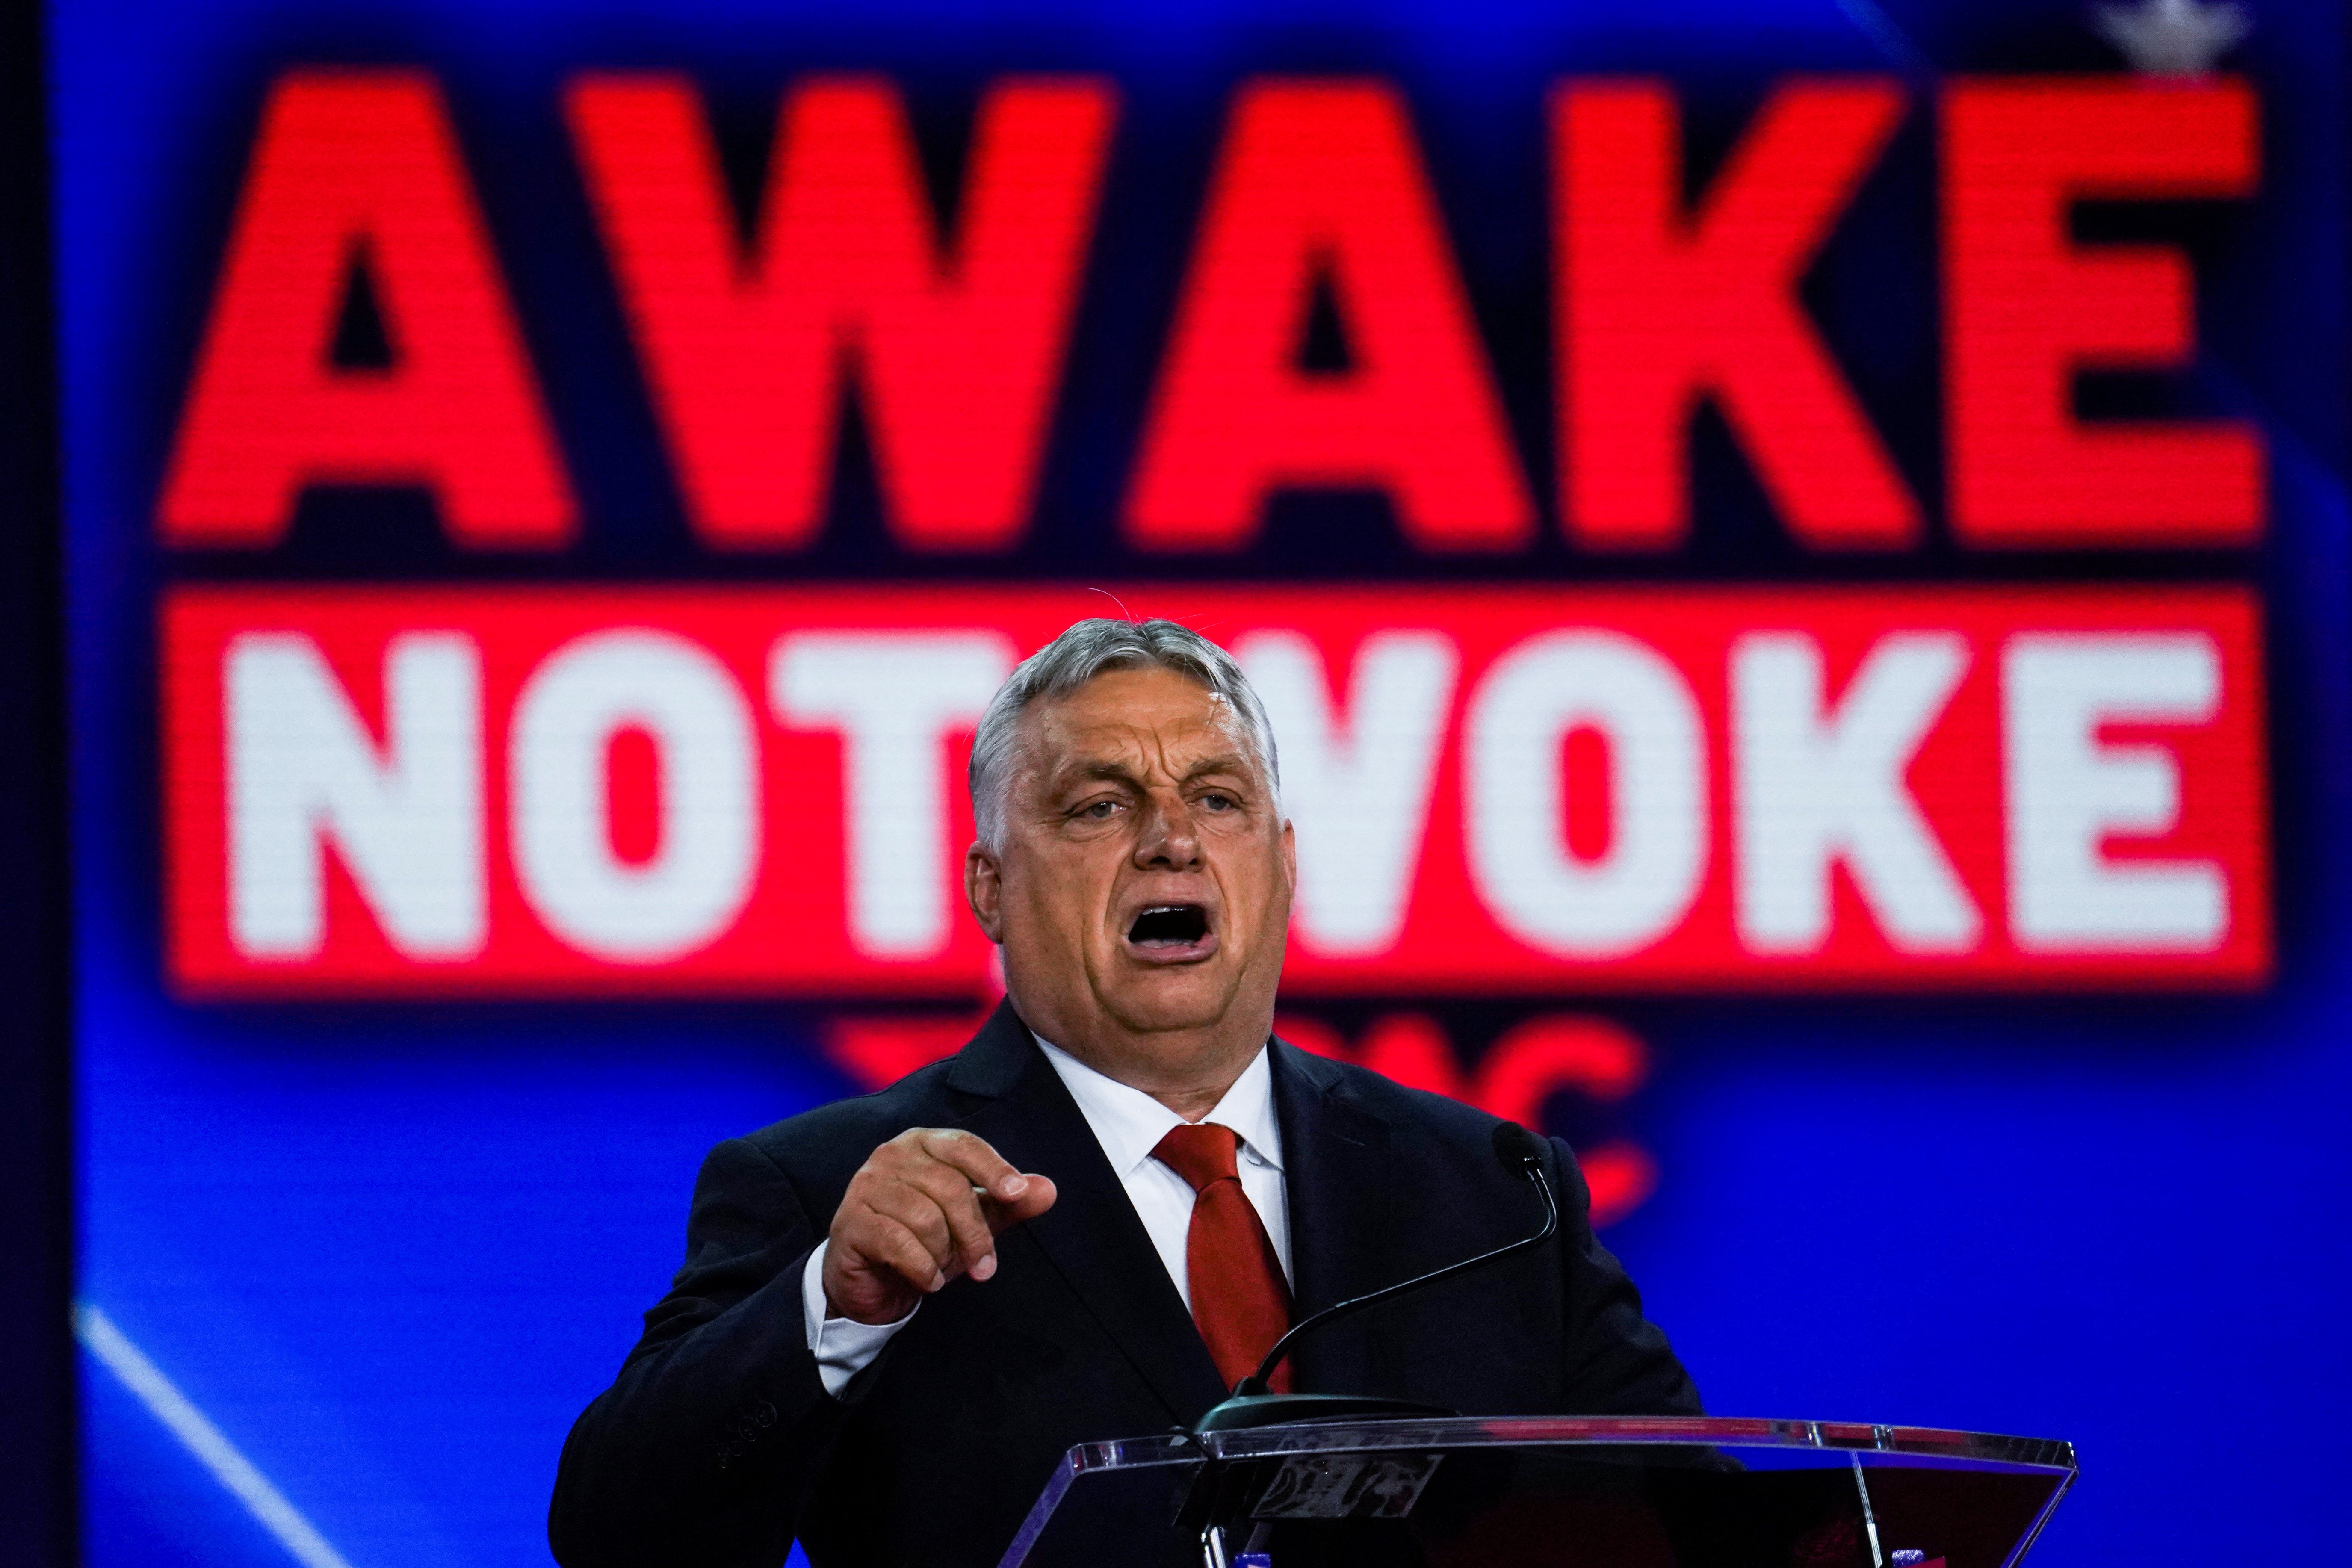 Not woke: prime minister of Hungary Viktor Orban addresses CPAC